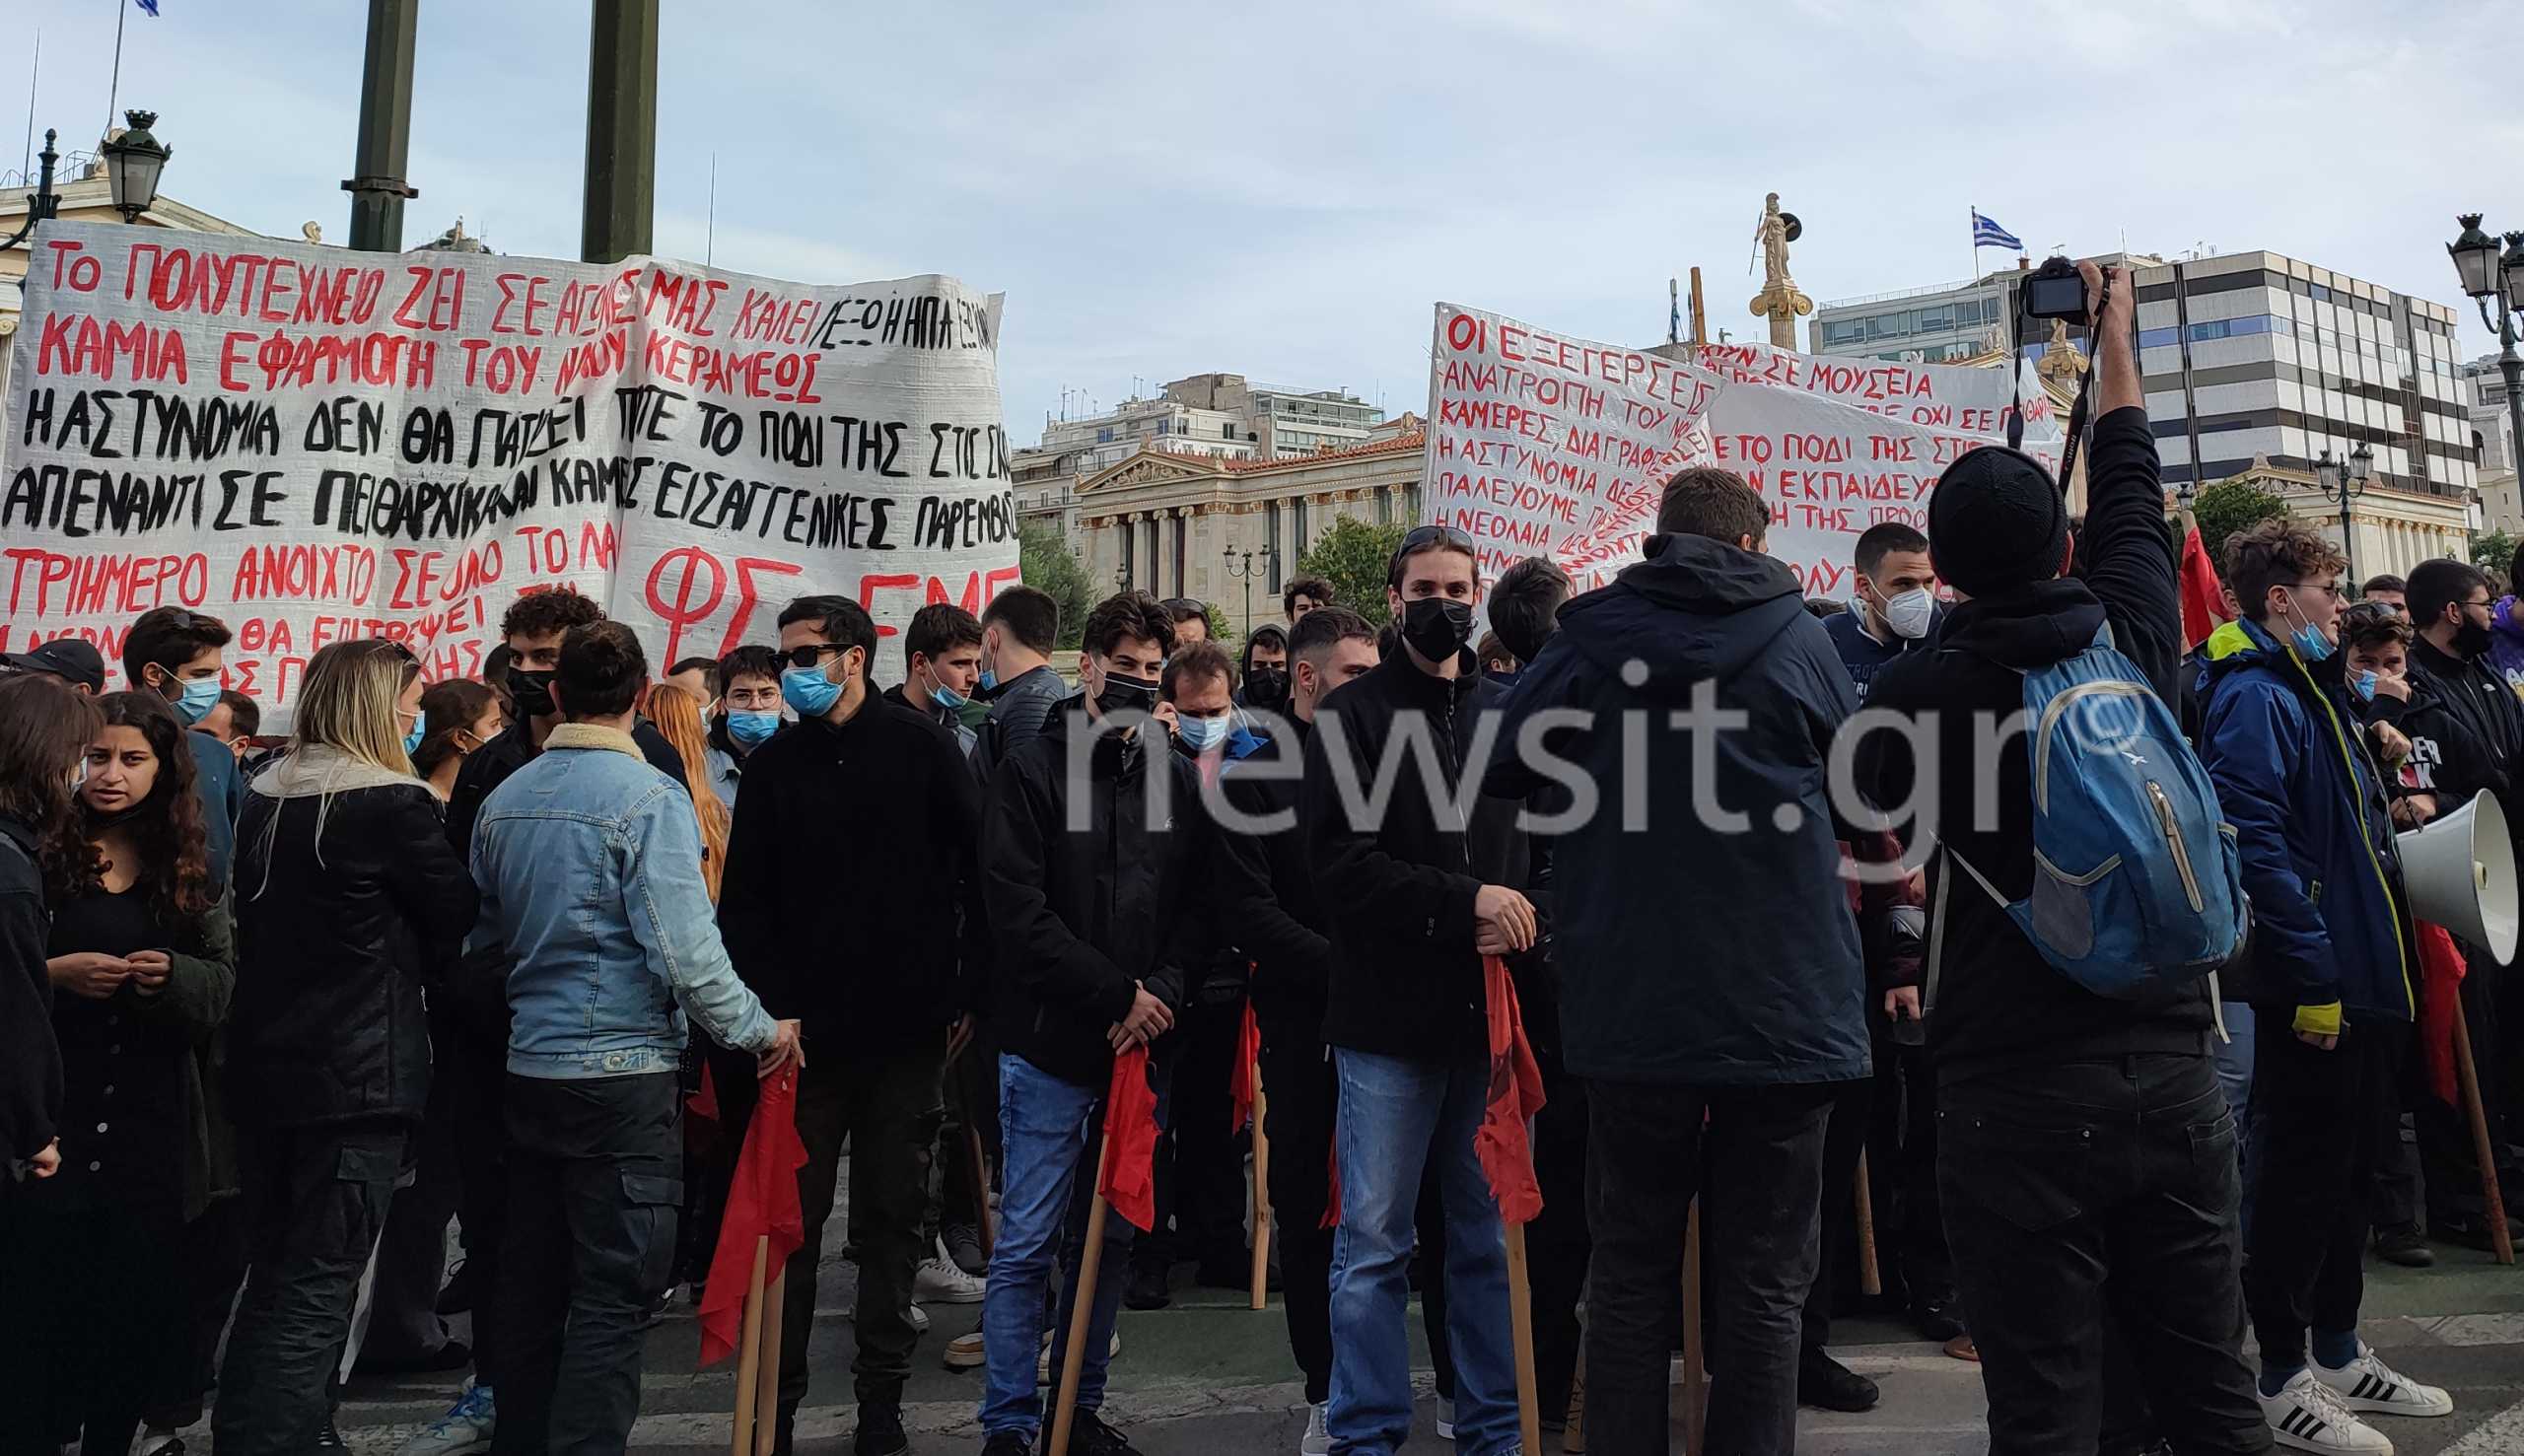 Φοιτητικό συλλαλητήριο στην Αθήνα – Κυκλοφοριακές ρυθμίσεις στο κέντρο